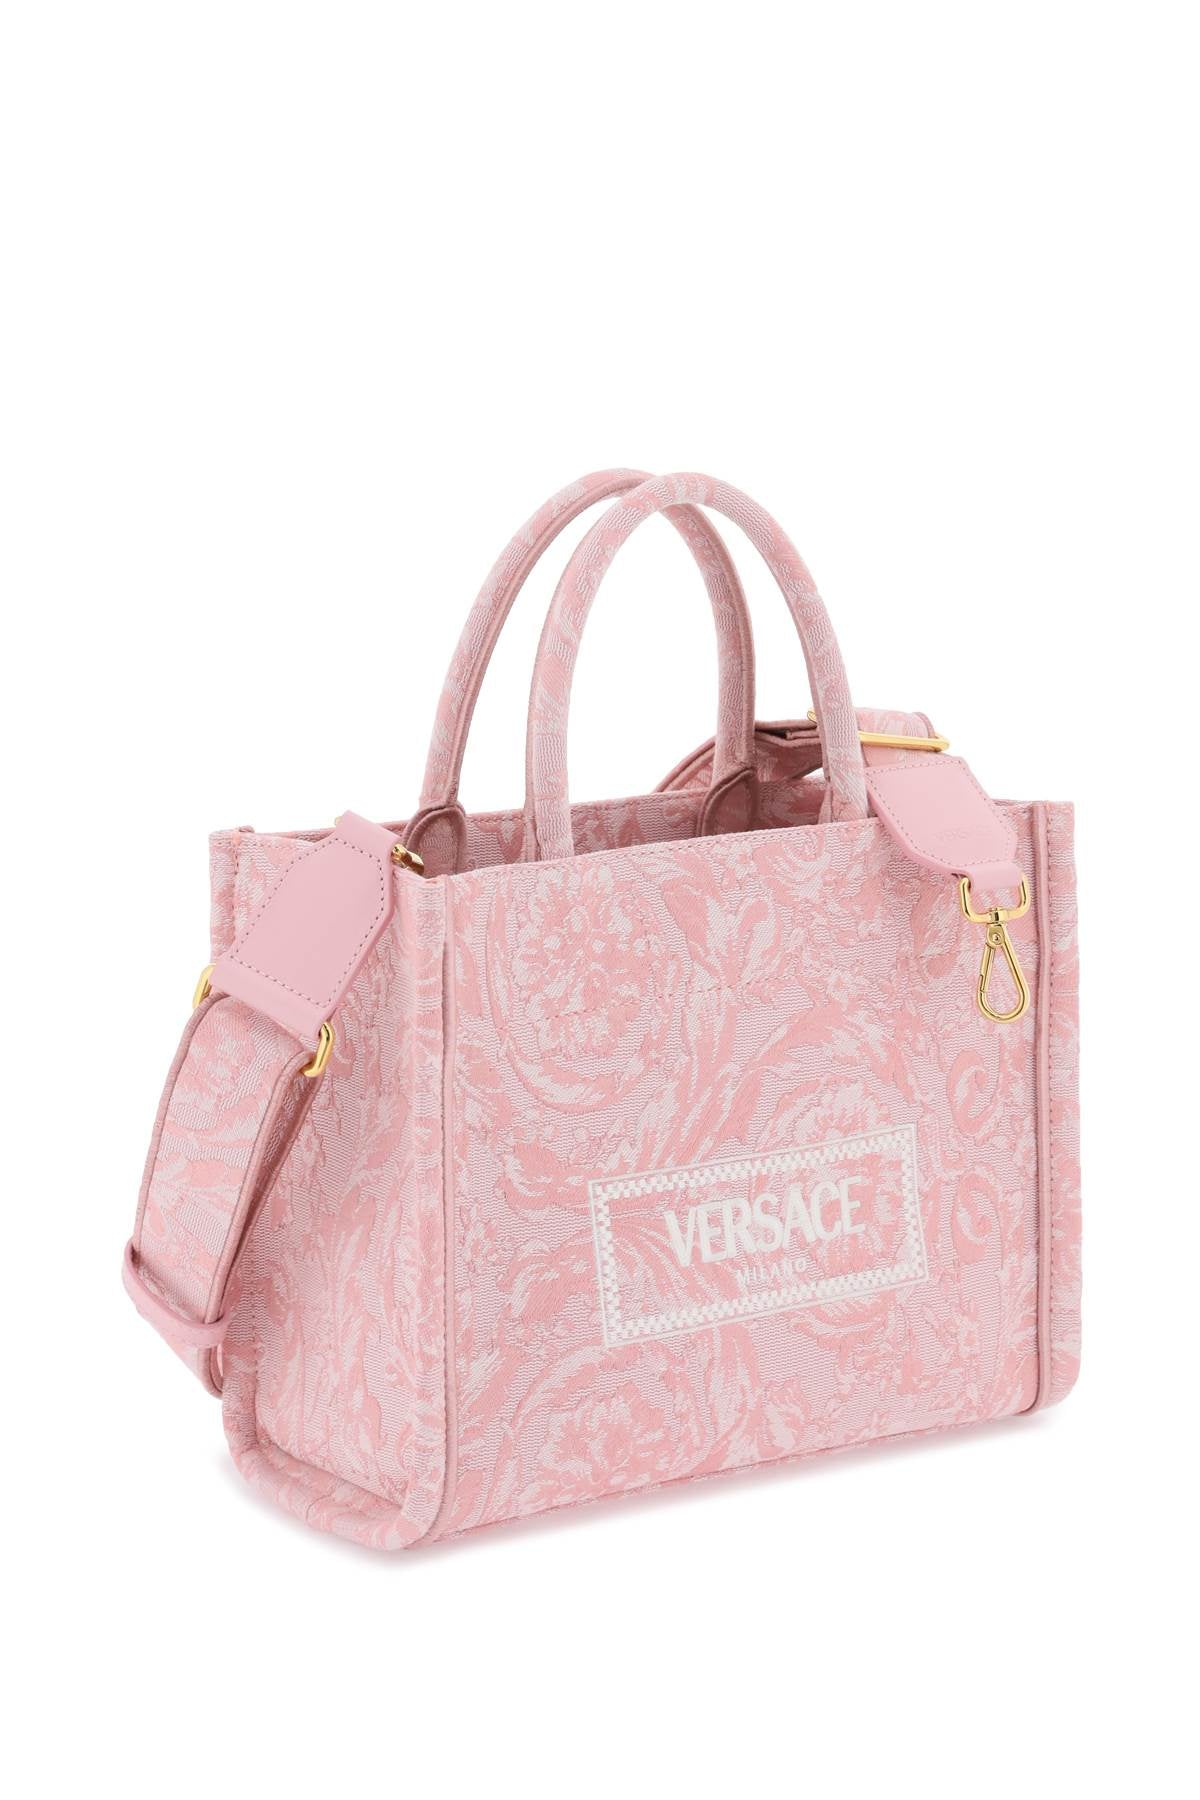 Versace athena barocco small tote bag-2